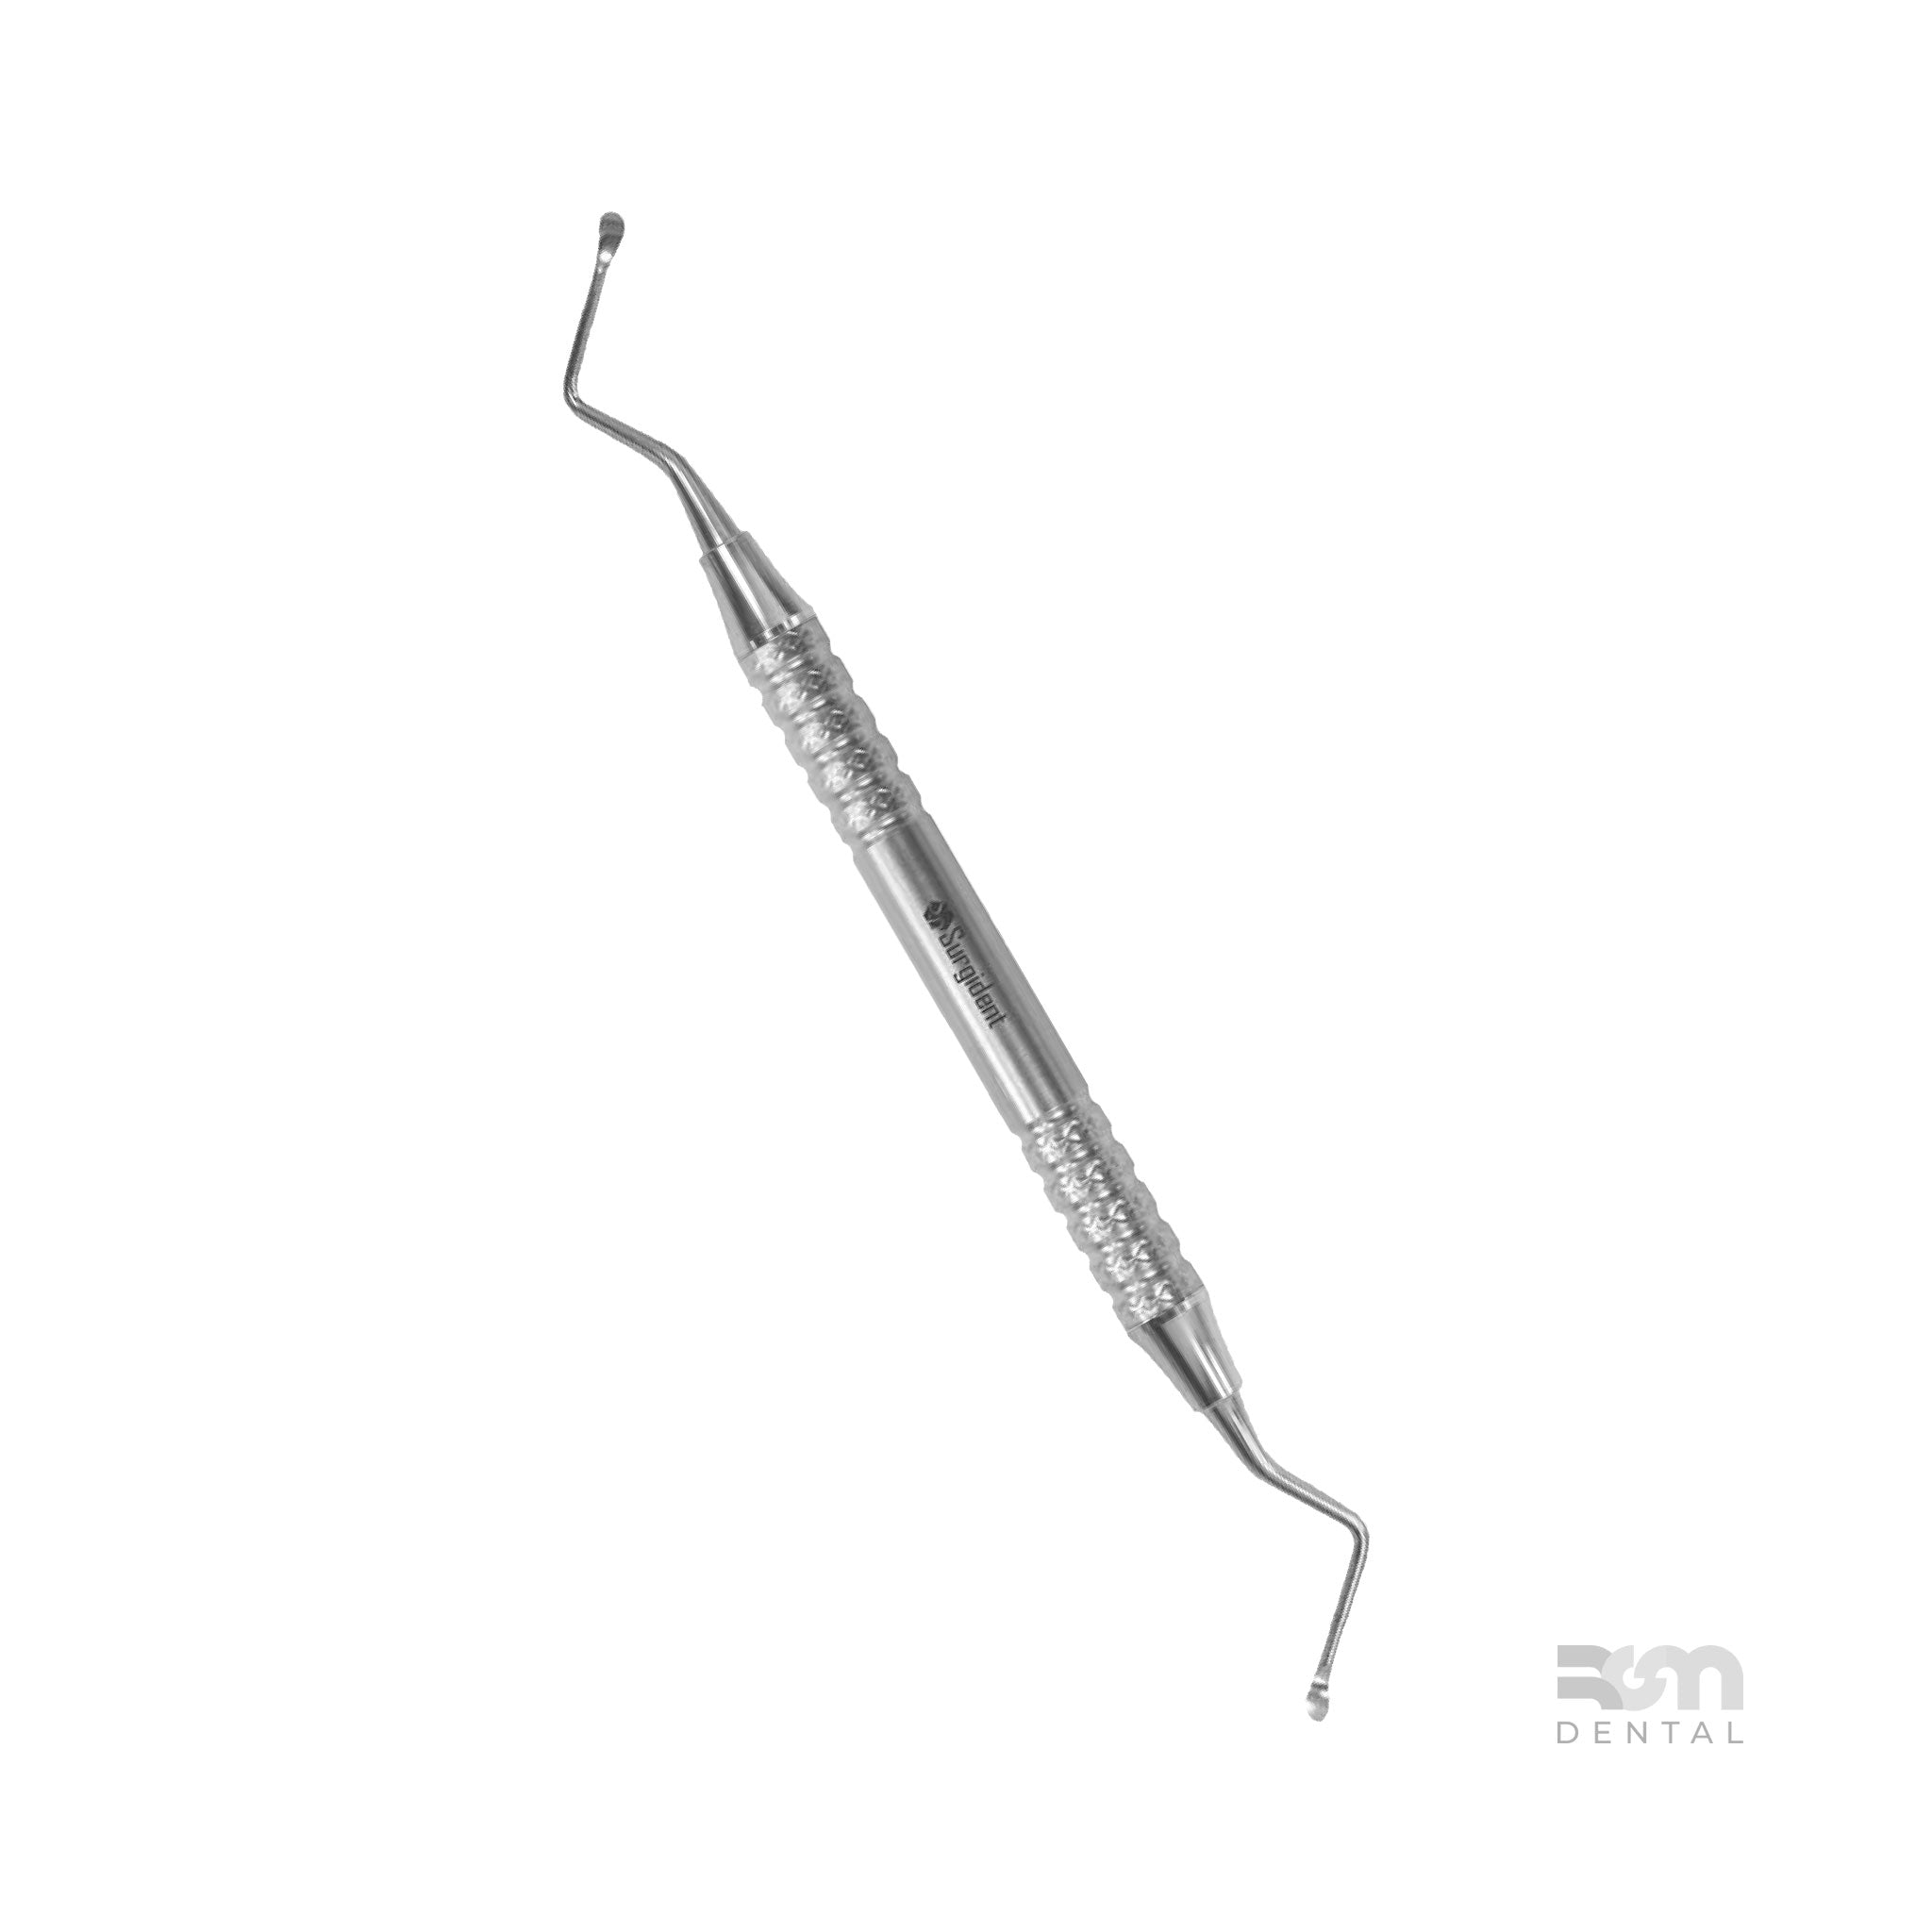 Surgical Curette CL85 : 2.5mm